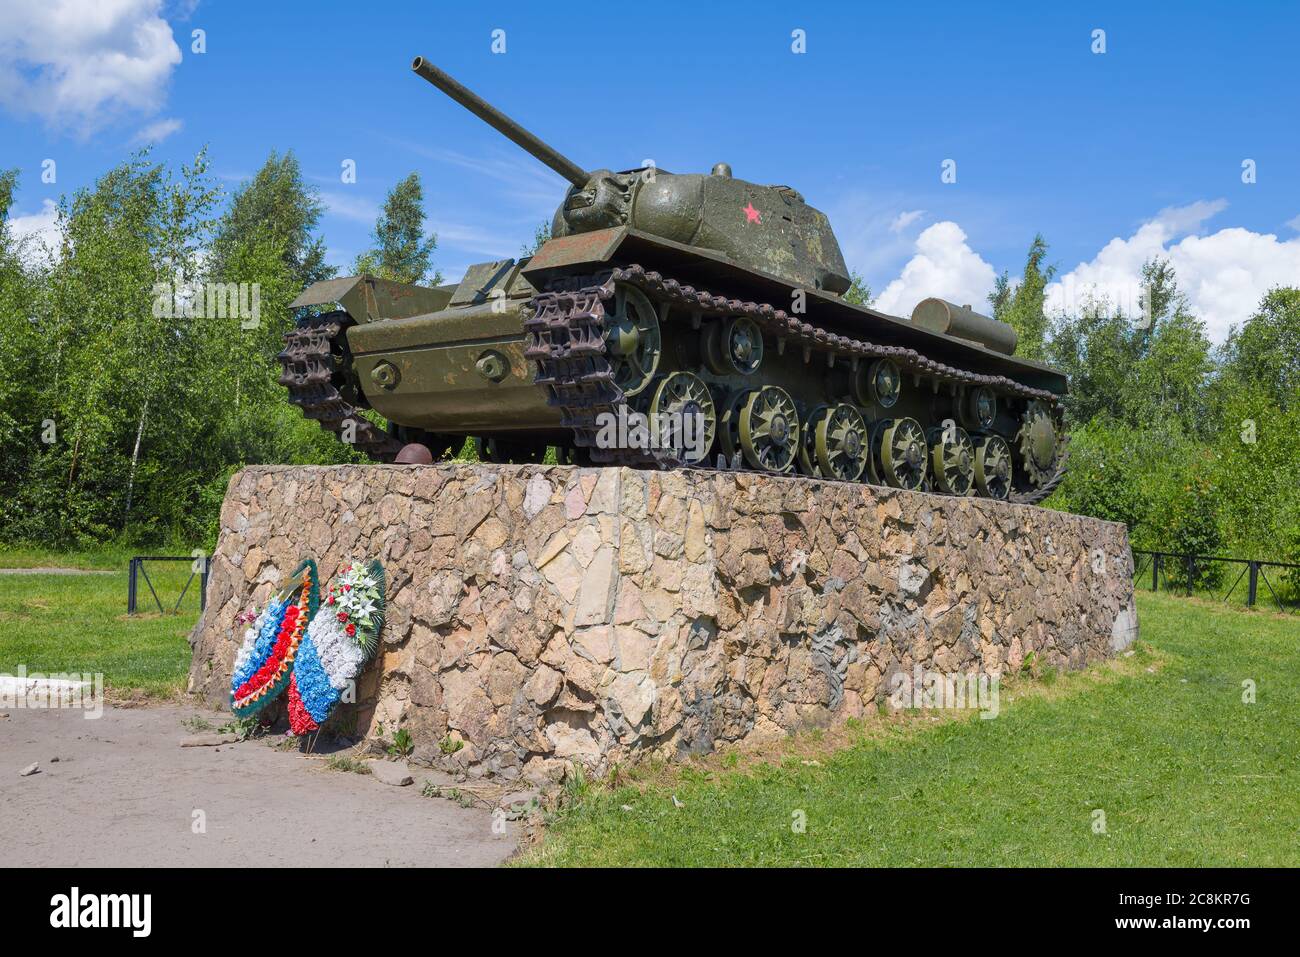 PARFINO, RUSSIE - 04 JUILLET 2020 : monument au réservoir lourd soviétique de KV-1s en gros plan le jour de juillet ensoleillé Banque D'Images